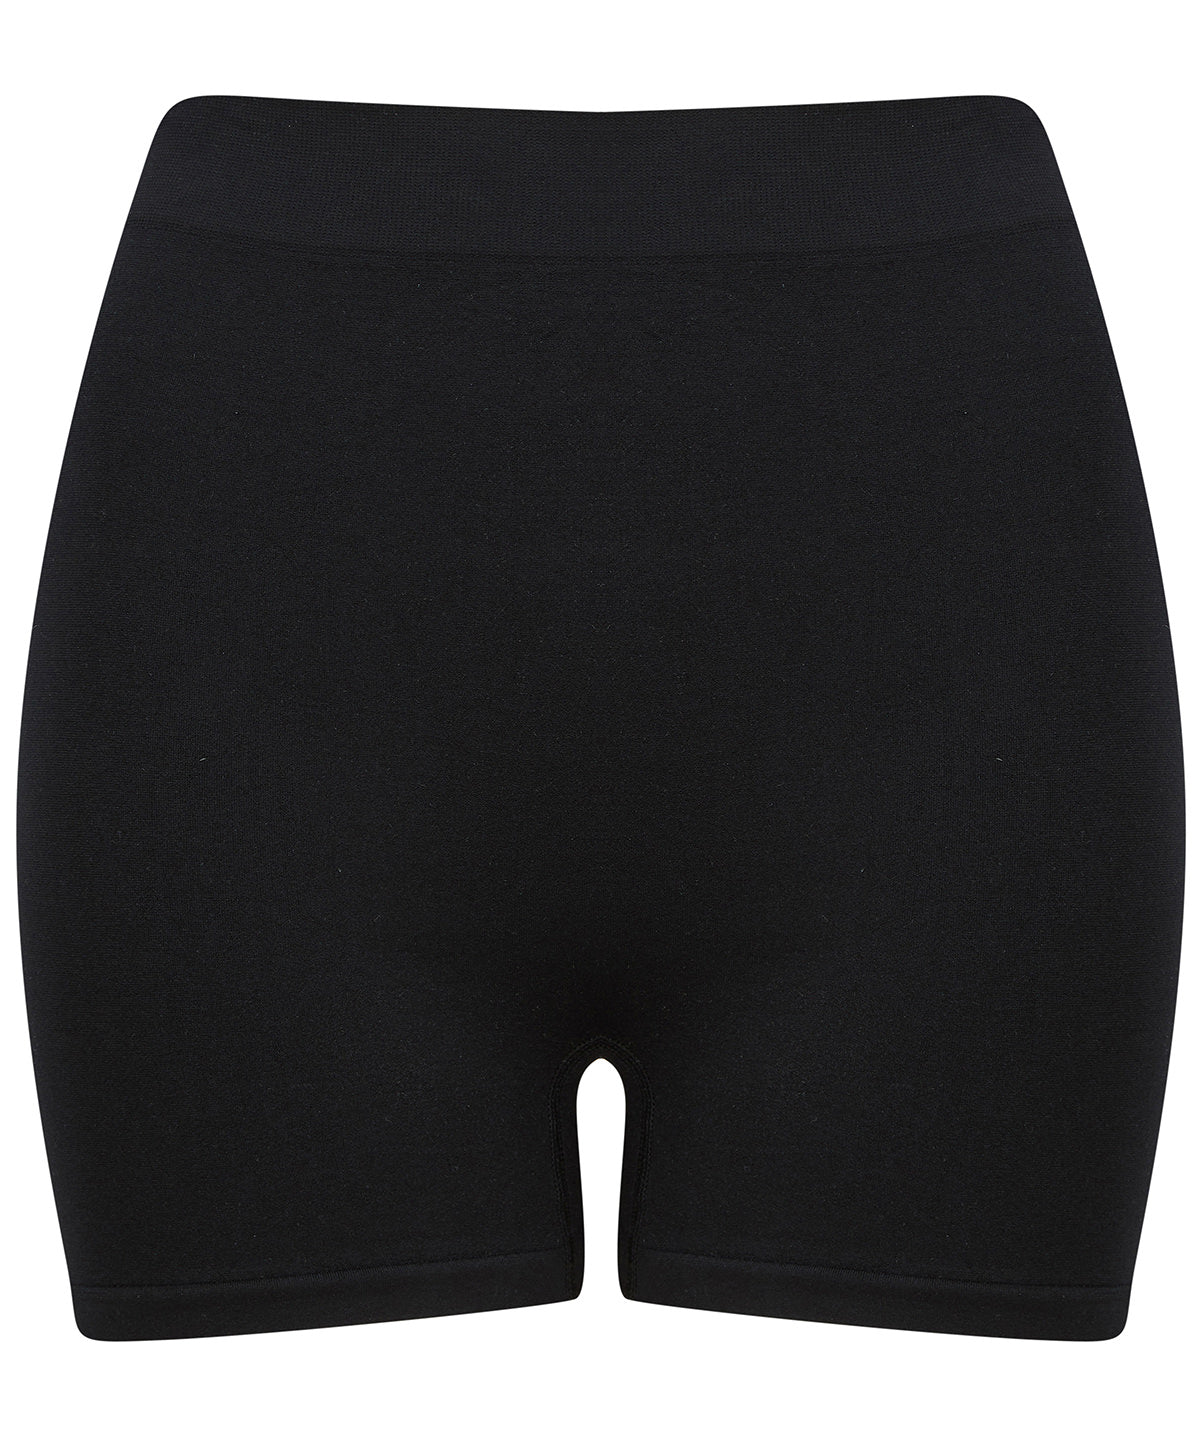 Stuttbuxur - Women's Seamless Shorts